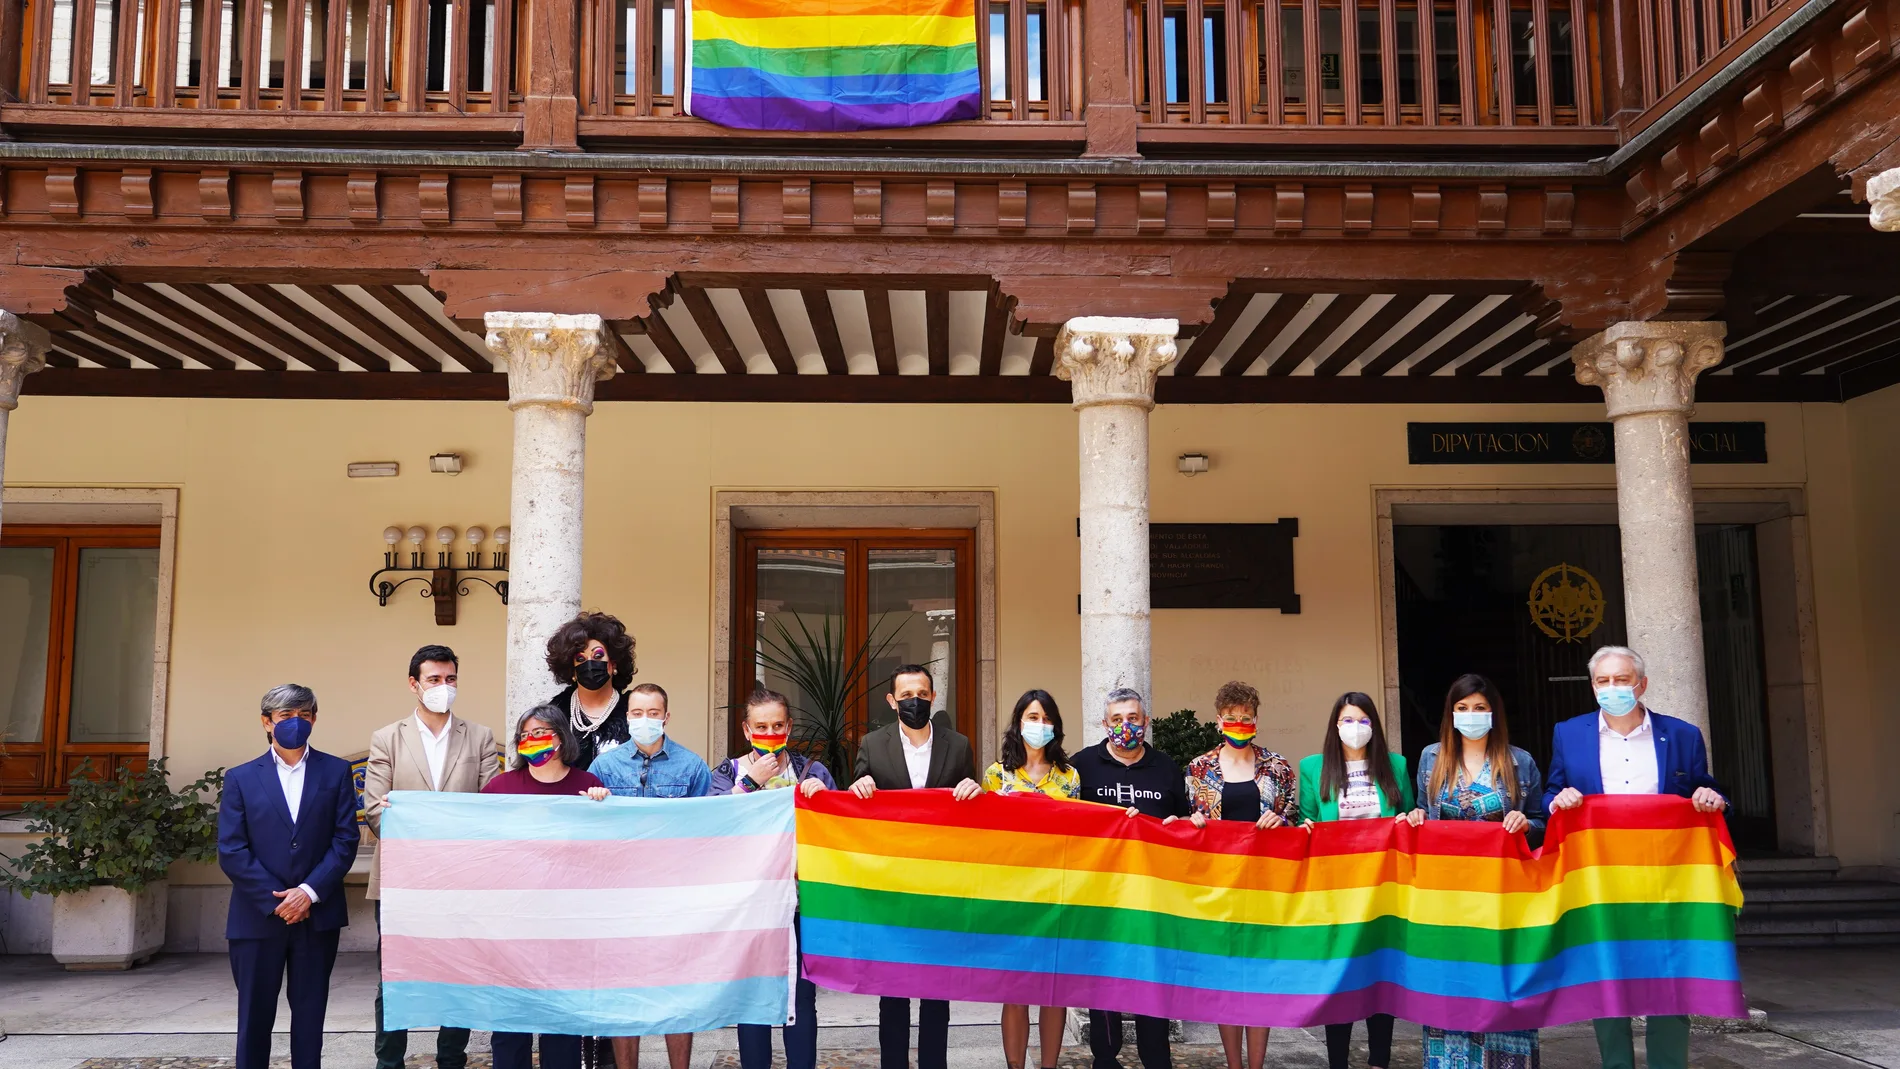 La Diputación de Valladolid coloca la bandera del colectivo LGTBI en el patio del Palacio Pimentel